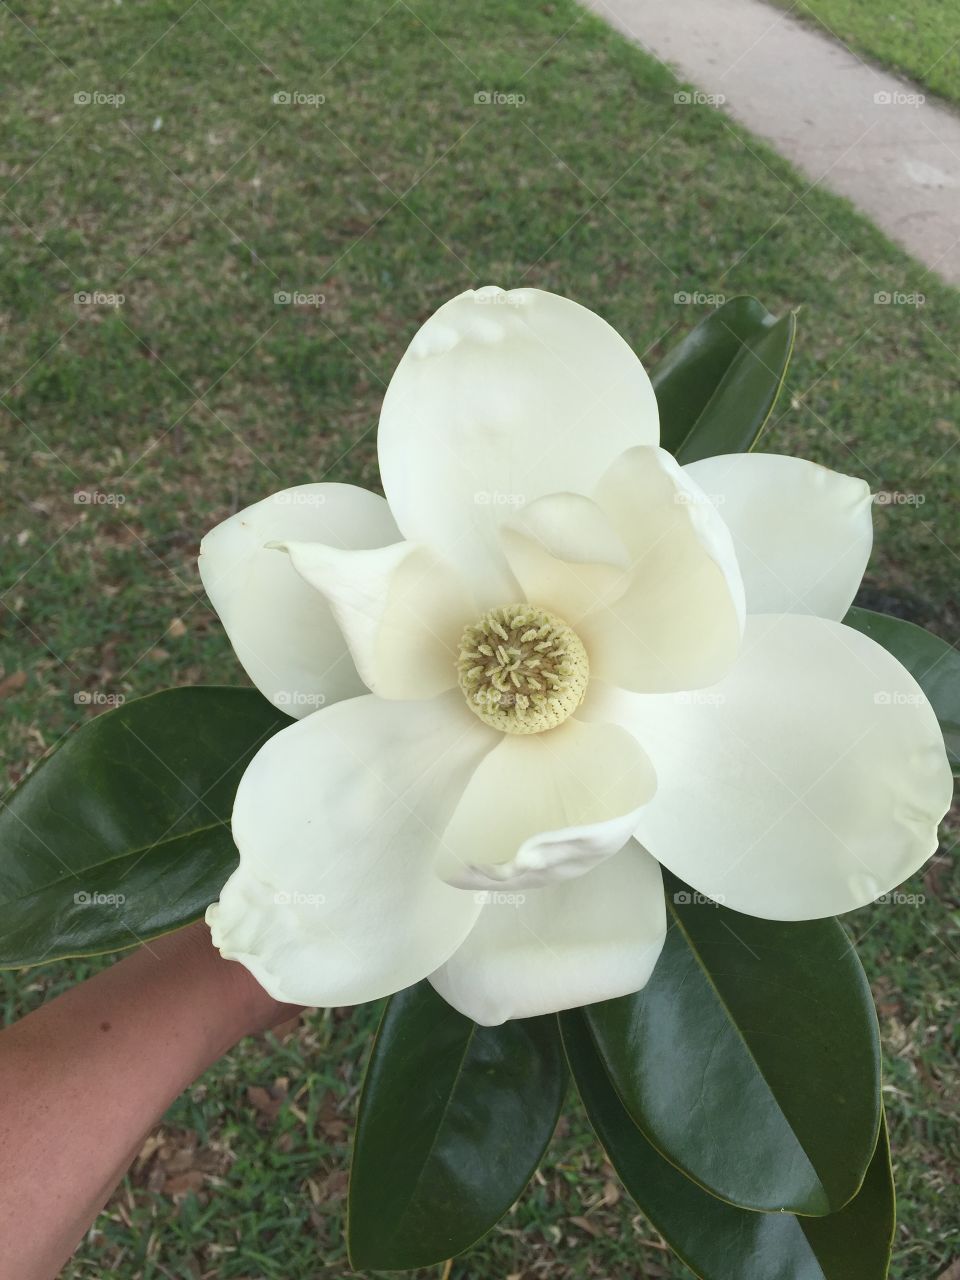 Magnolia in bloom 